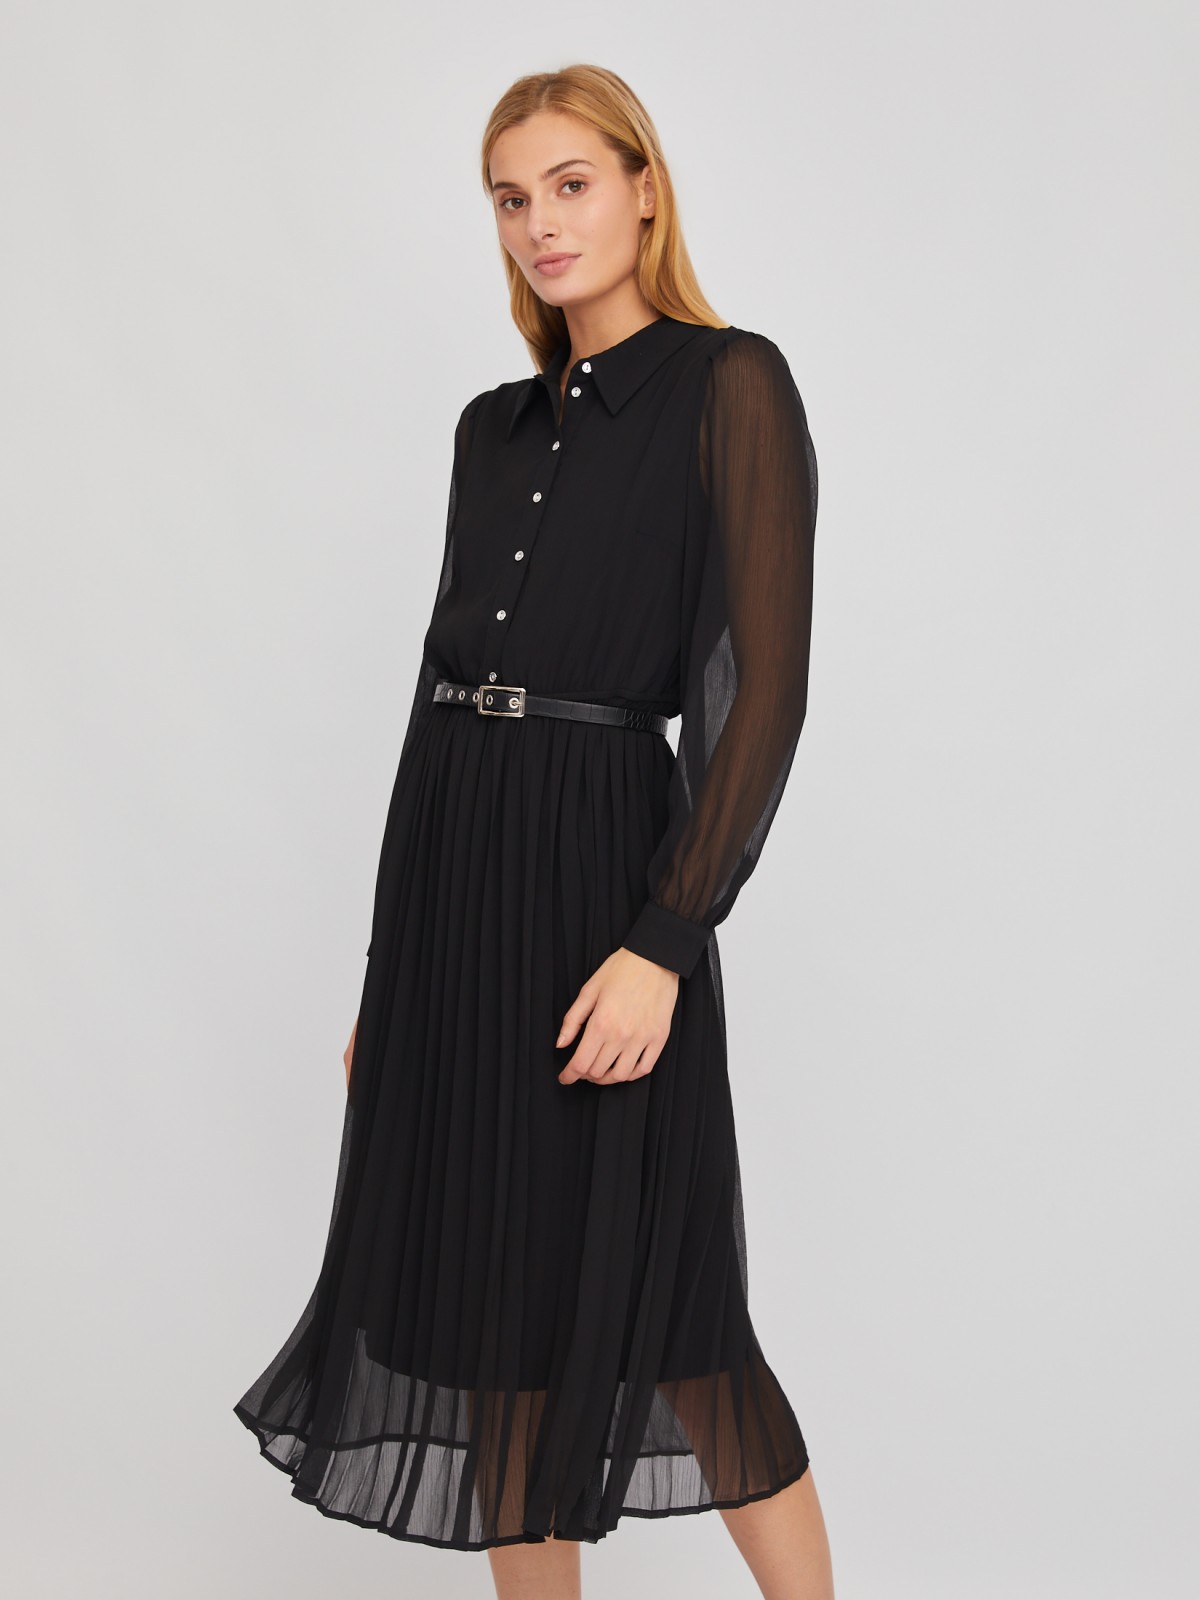 Шифоновое платье-рубашка длины миди с плиссировкой и акцентном на талии zolla 024118262033, цвет черный, размер S